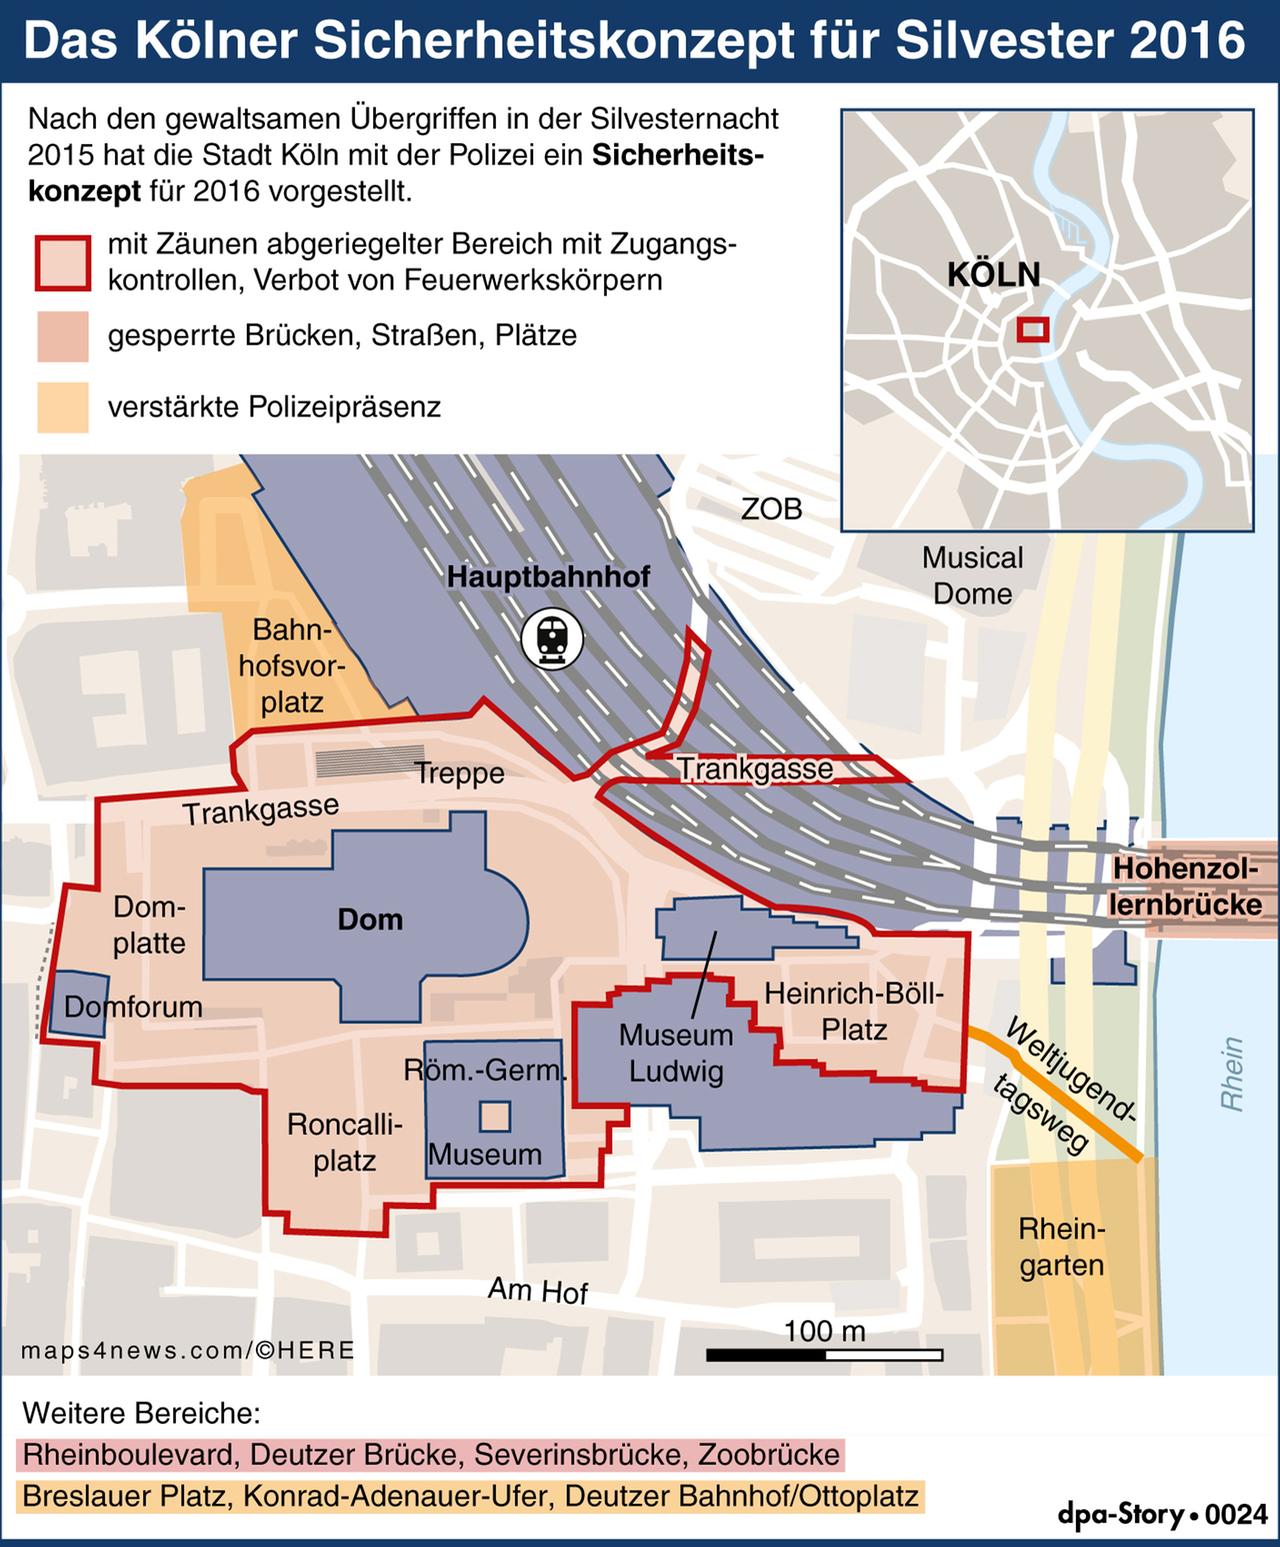 Karte von Köln mit der Gegend um den Hauptbahnhof und dem Kölner Dom mit den geplanten Sicherheitszonen zu Silvester 2016/17.